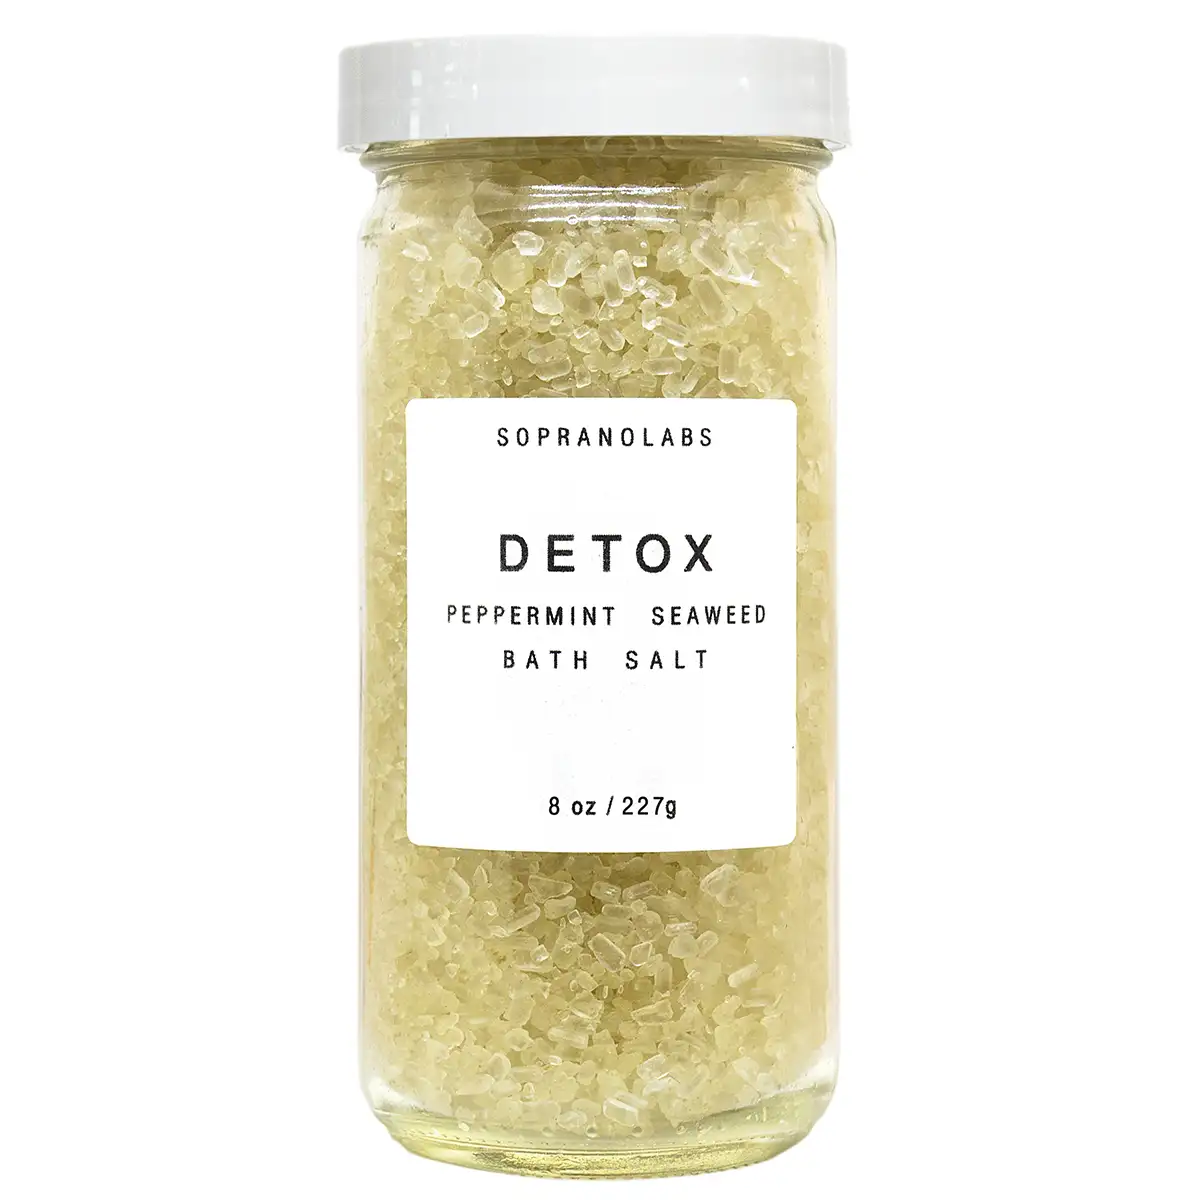 SopranoLabs Peppermint Detox Bath Salt